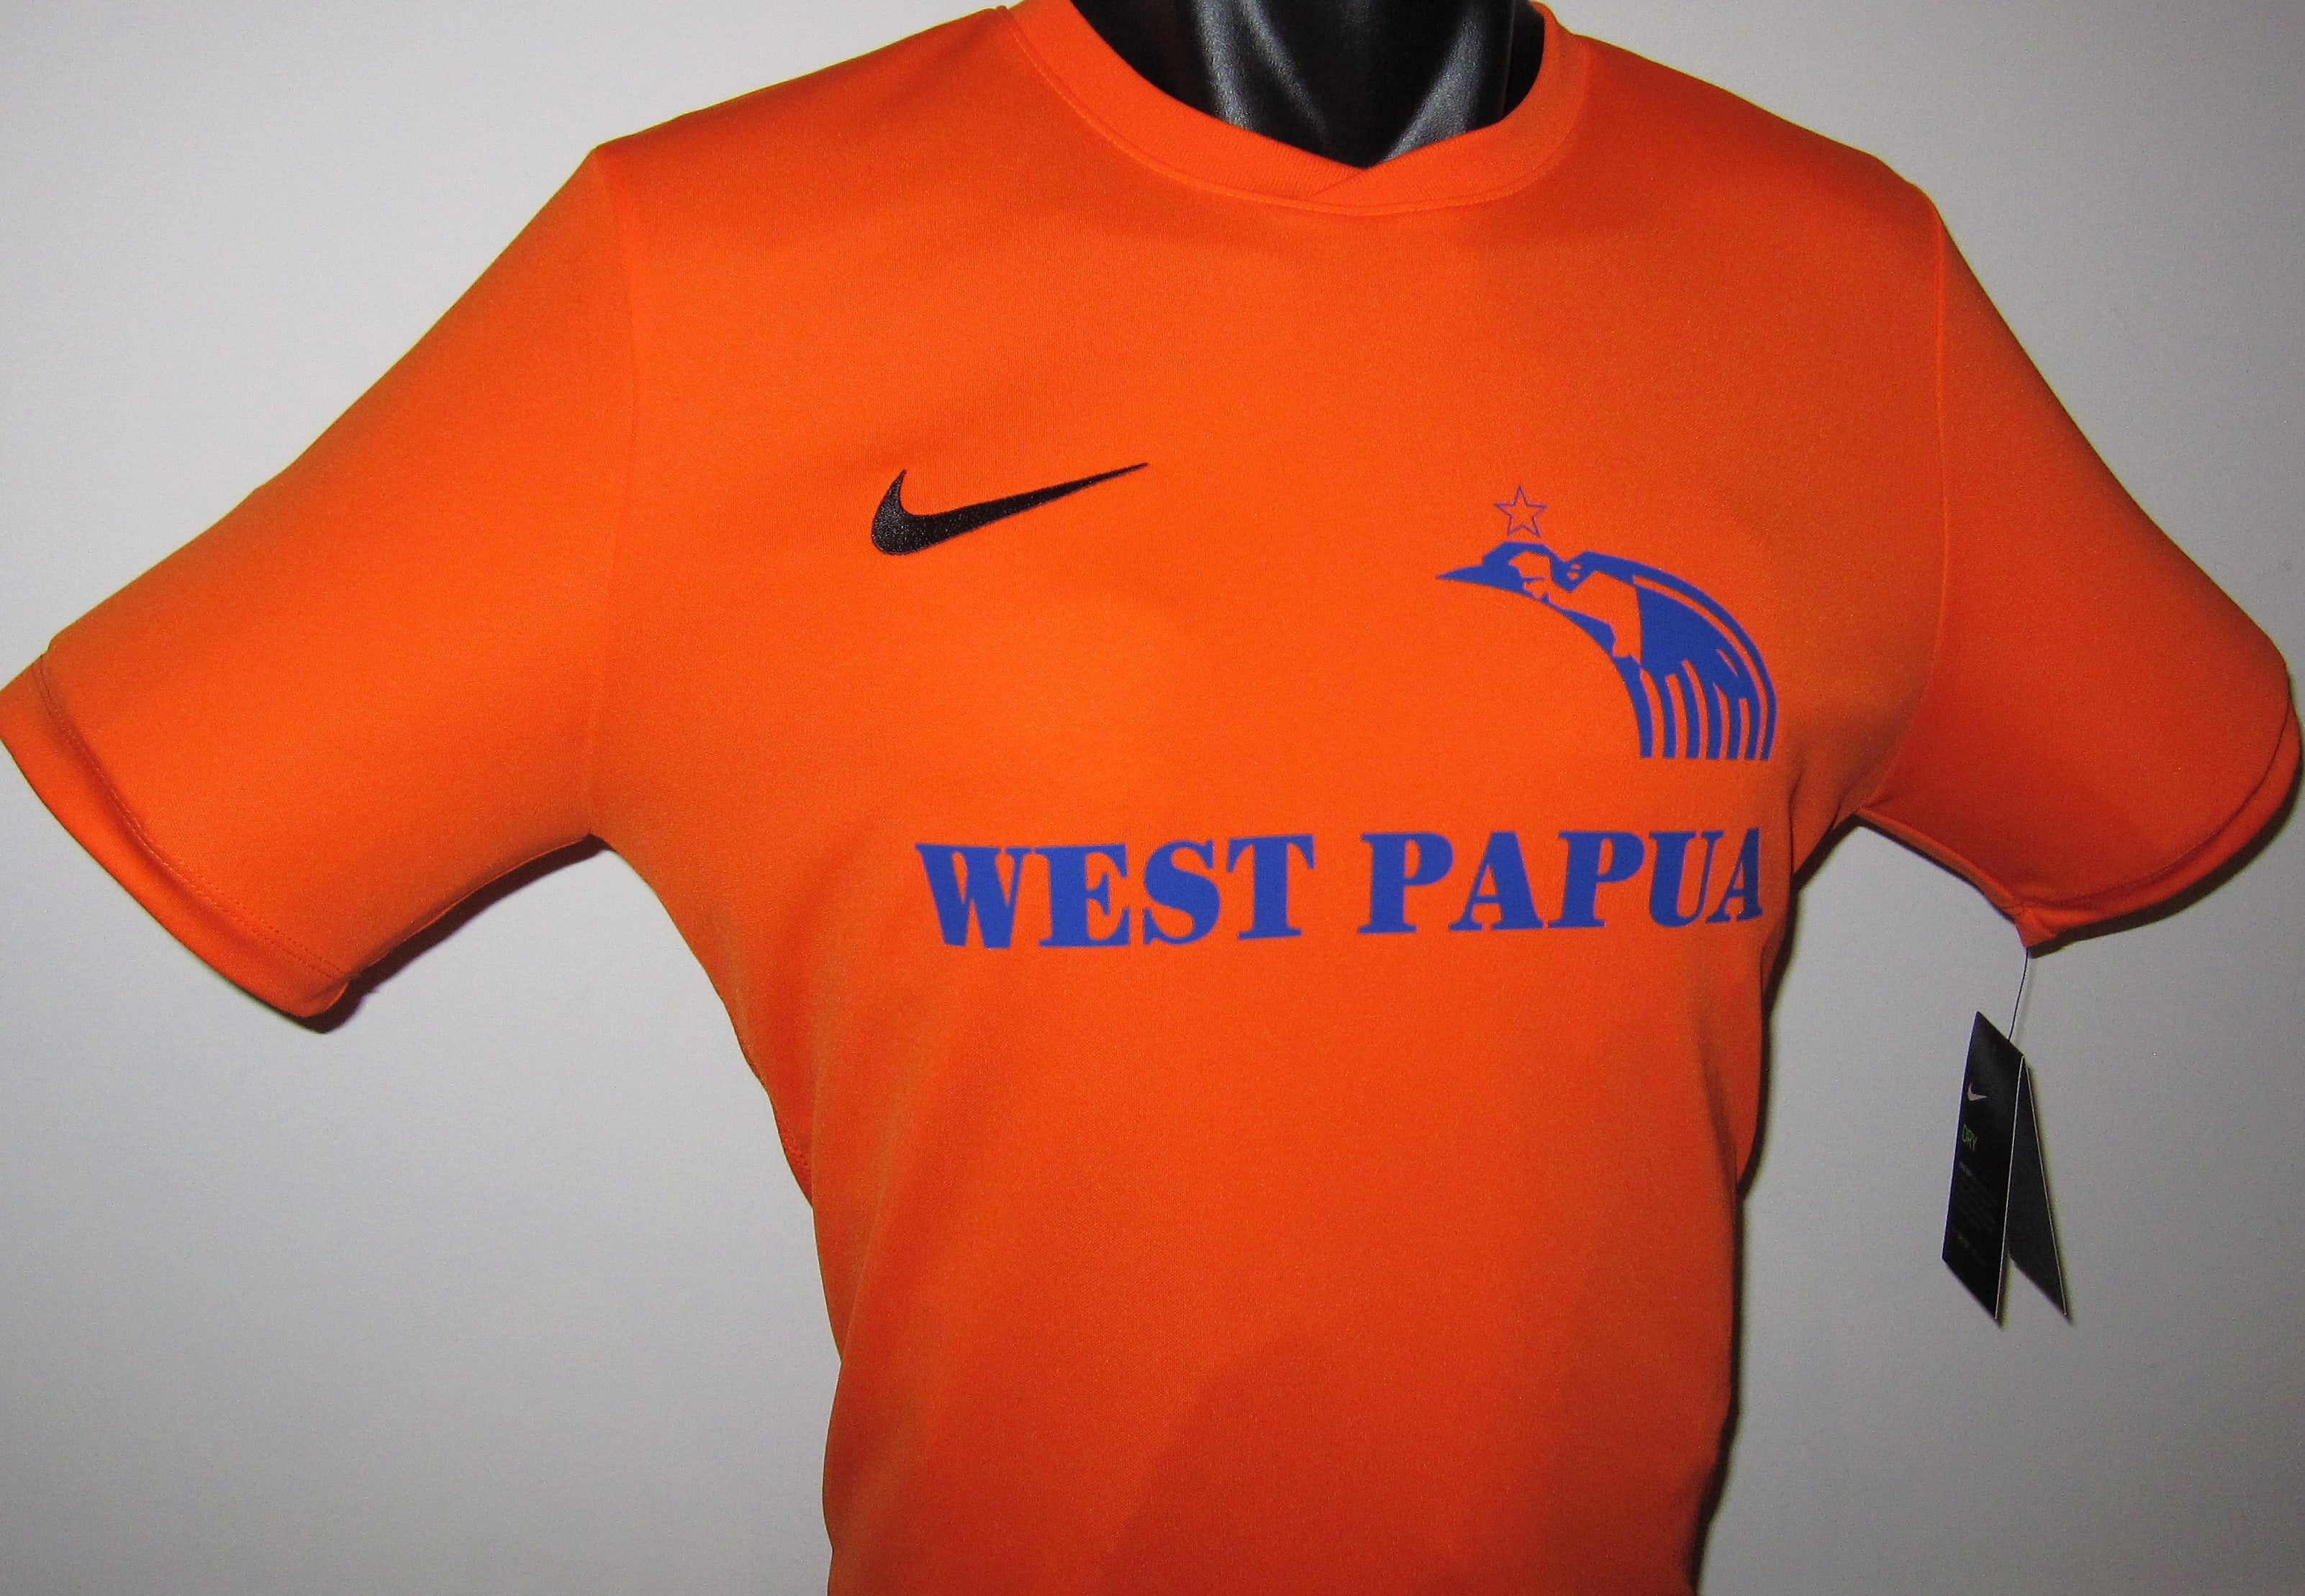 West Papua 2019 Home Jersey/Shirt